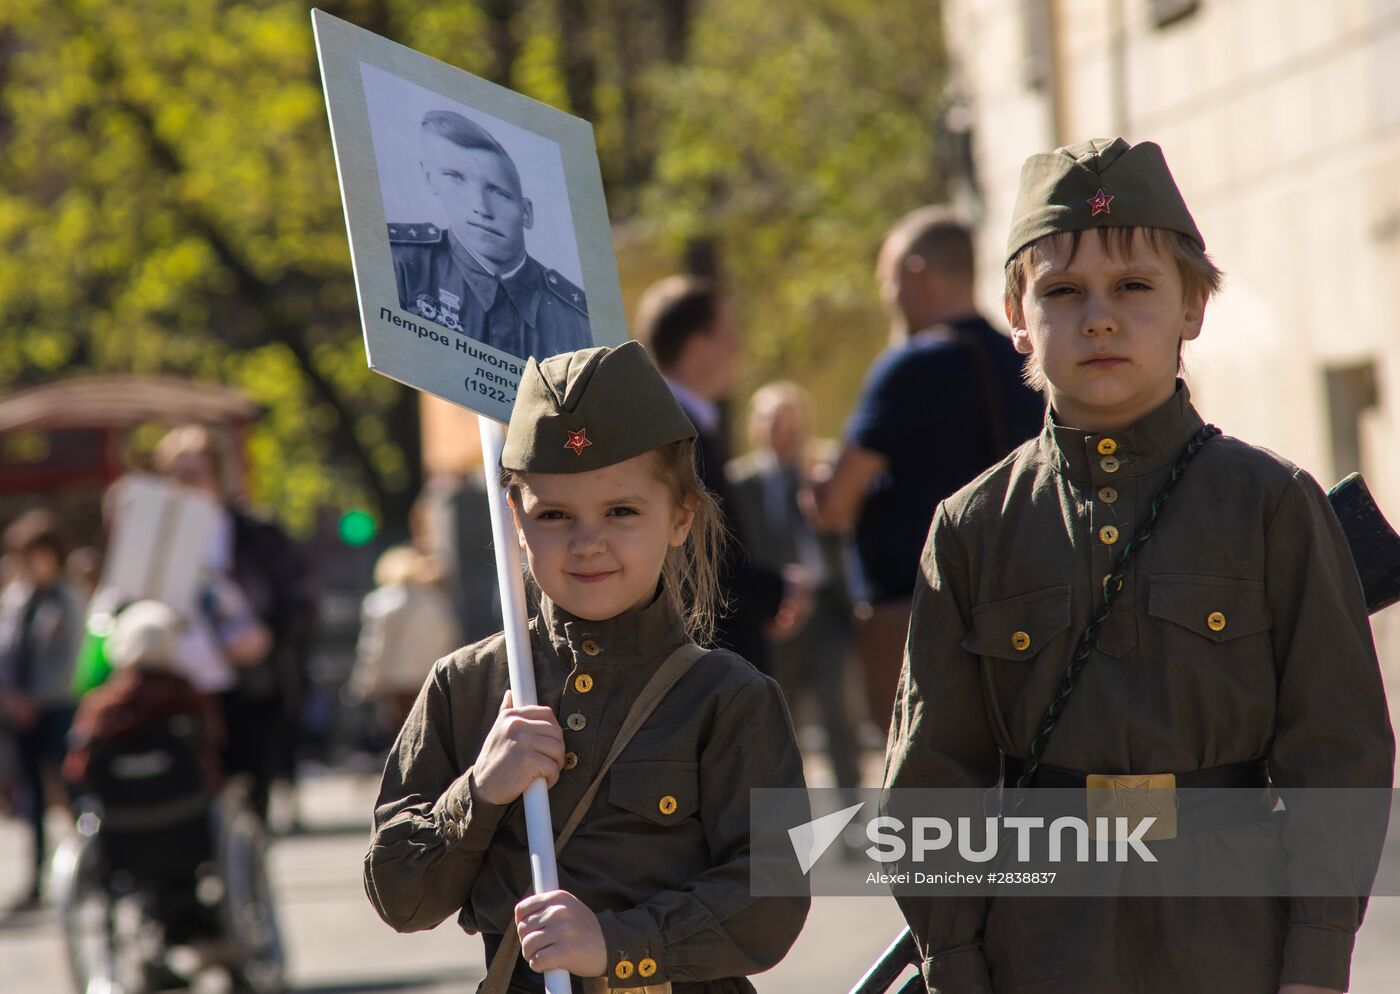 Immortal Regiment patriotic action in St.Petersburg